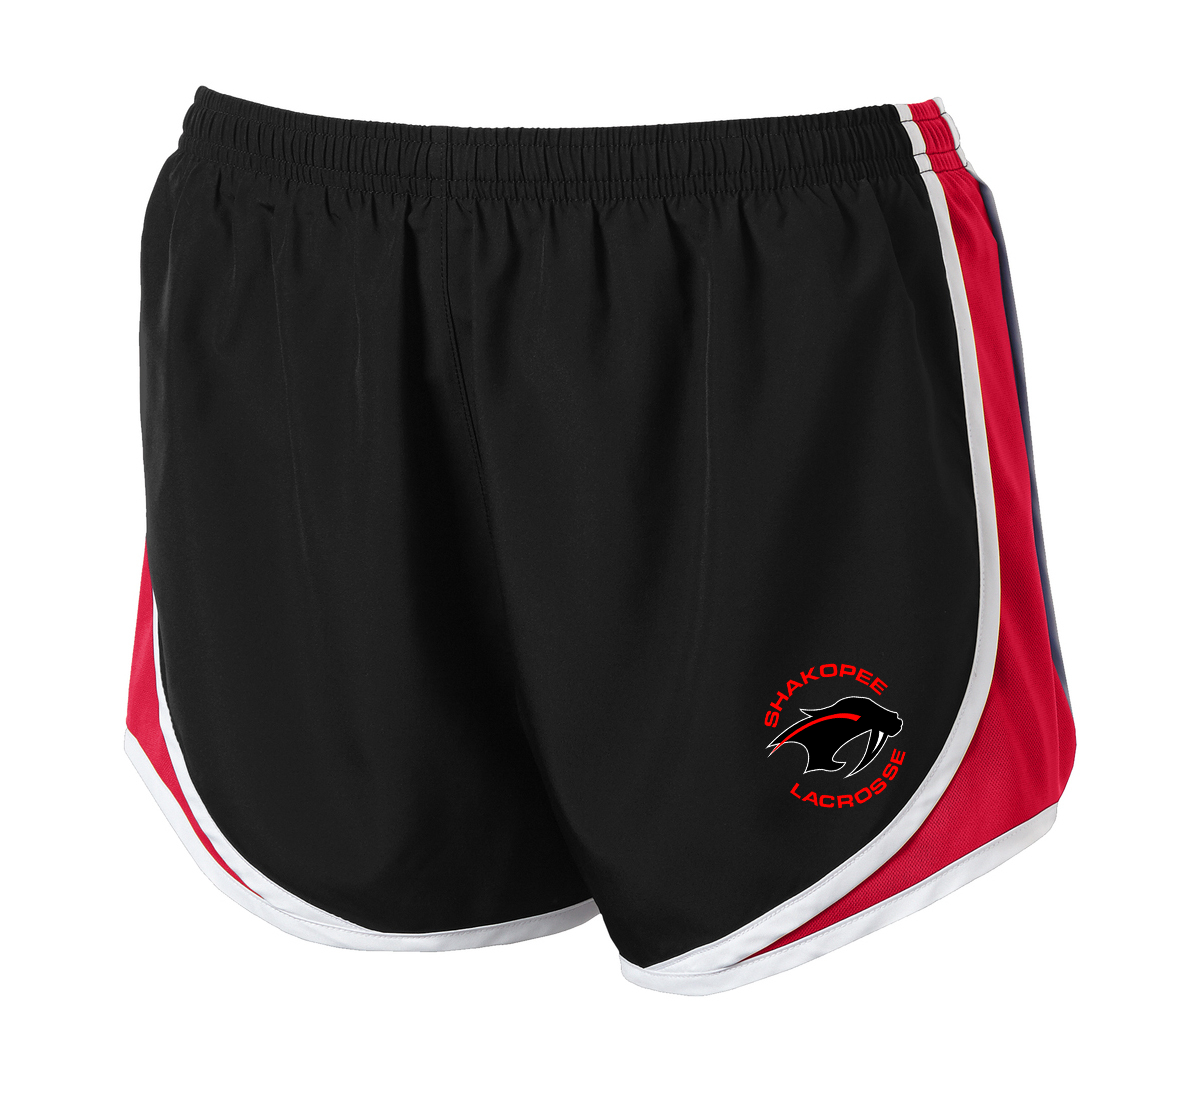 Shakopee Lacrosse Black/Red Women's Shorts